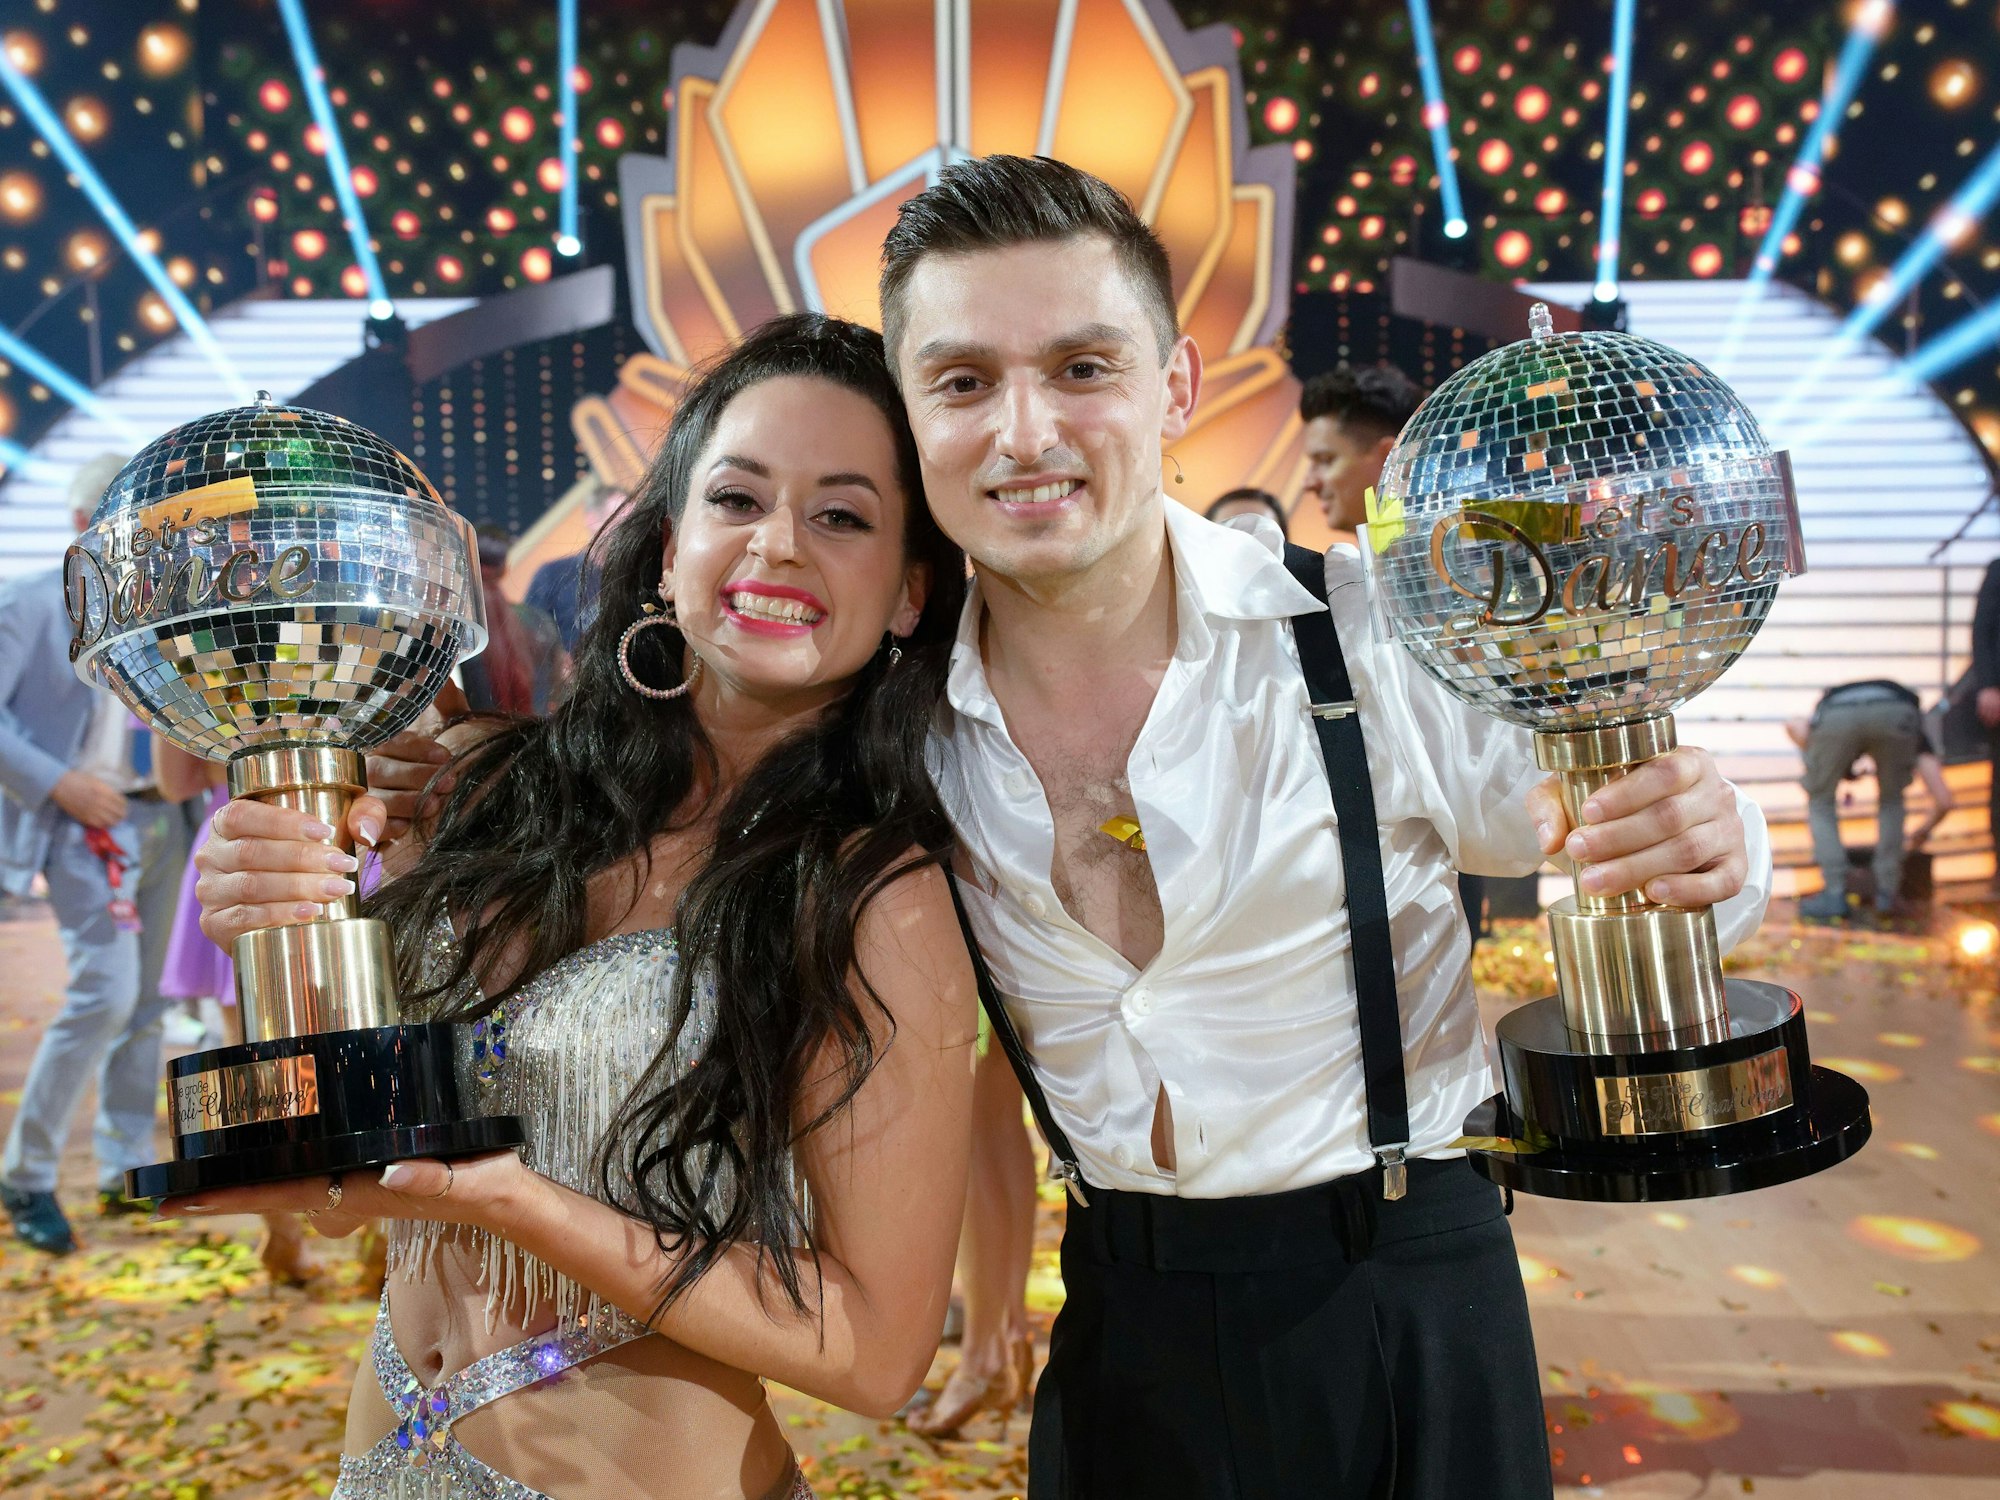 Die Sieger Malika Dzumaev (l) und Zsolt Sándor Cseke (r) stehen bei der "Lets Dance Profi-Challenge" mit ihren Pokalen im Studio.